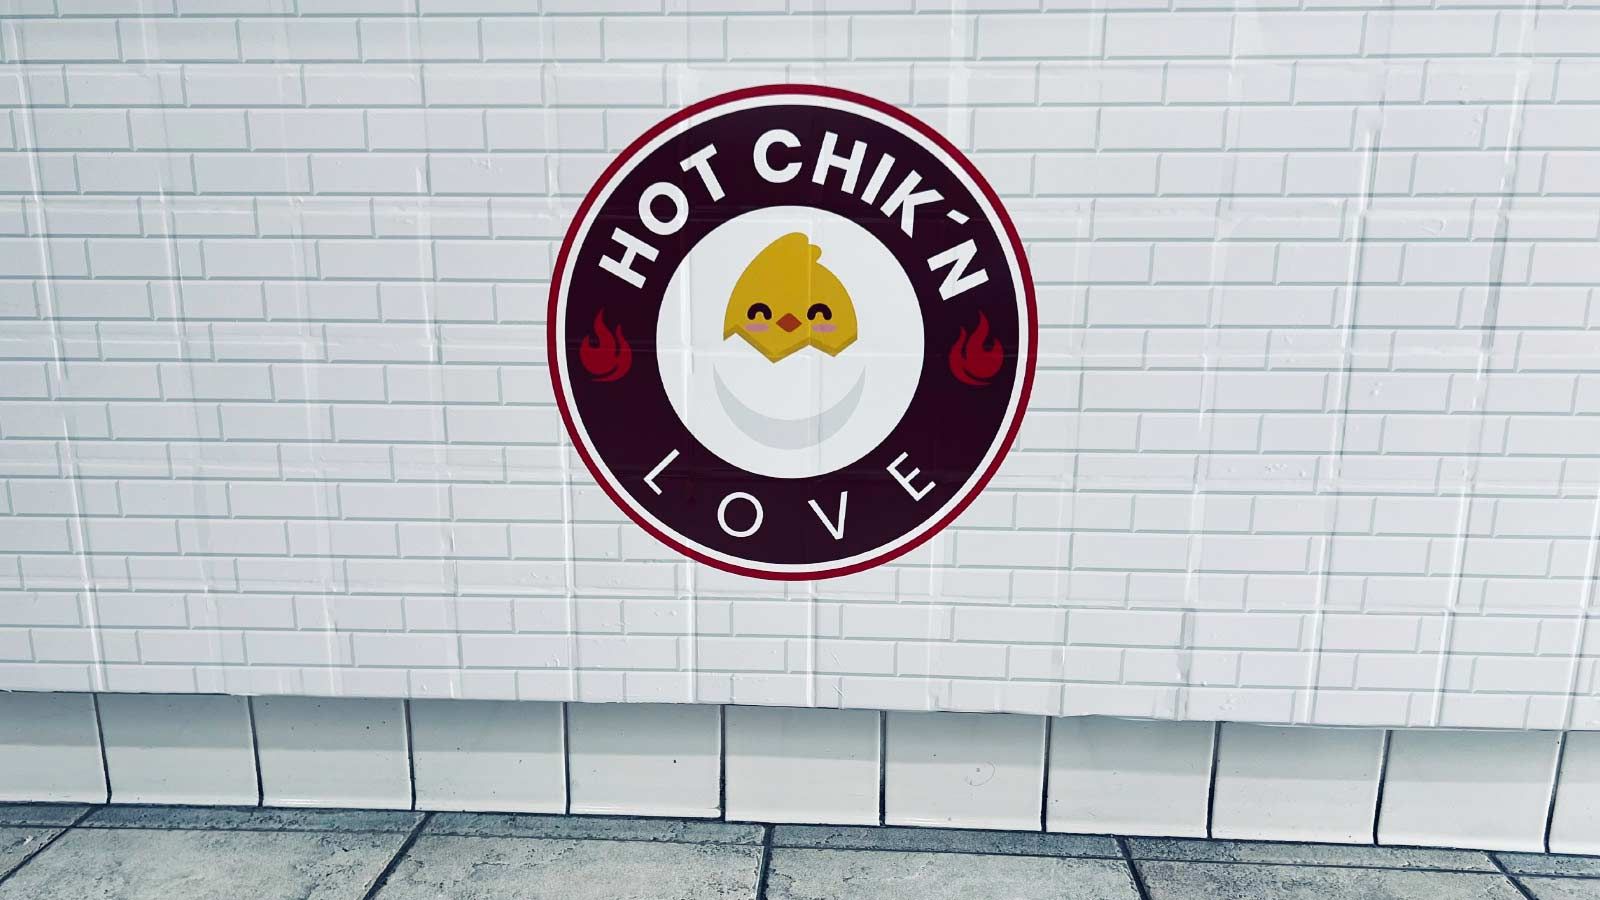 Hot chikn love interior sign